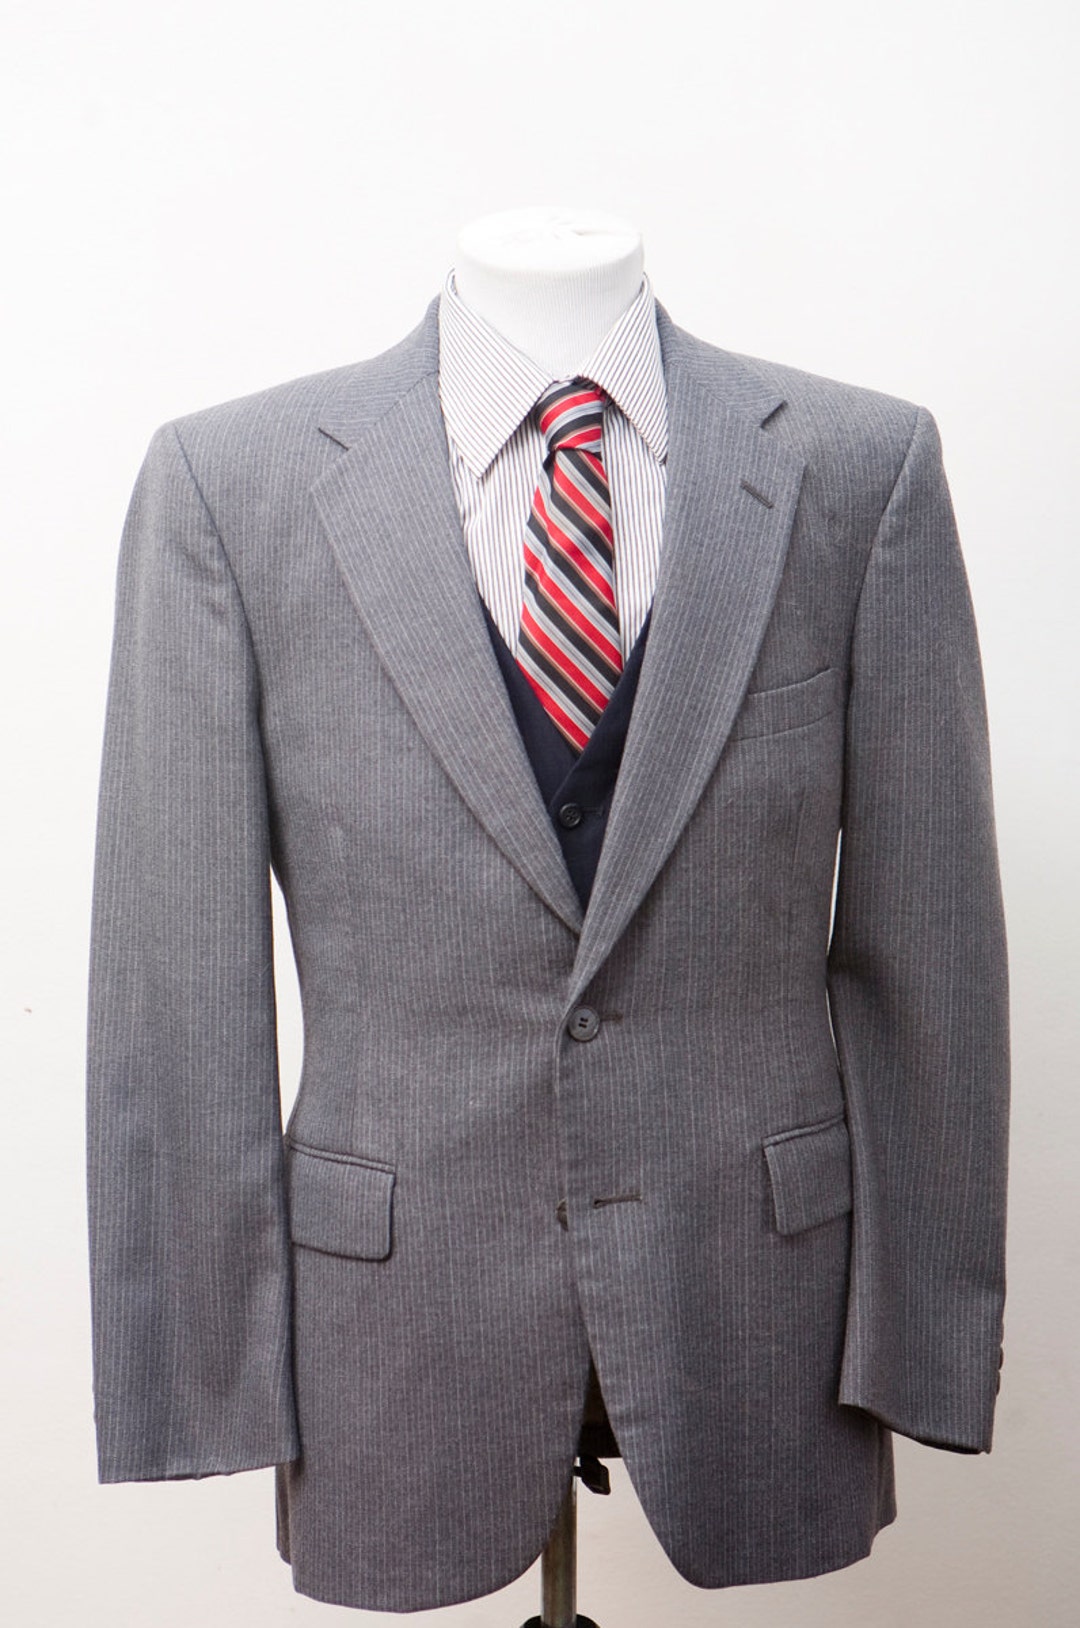 Men's Instant Outfit / Blazer Vest Shirt Tie / - Etsy